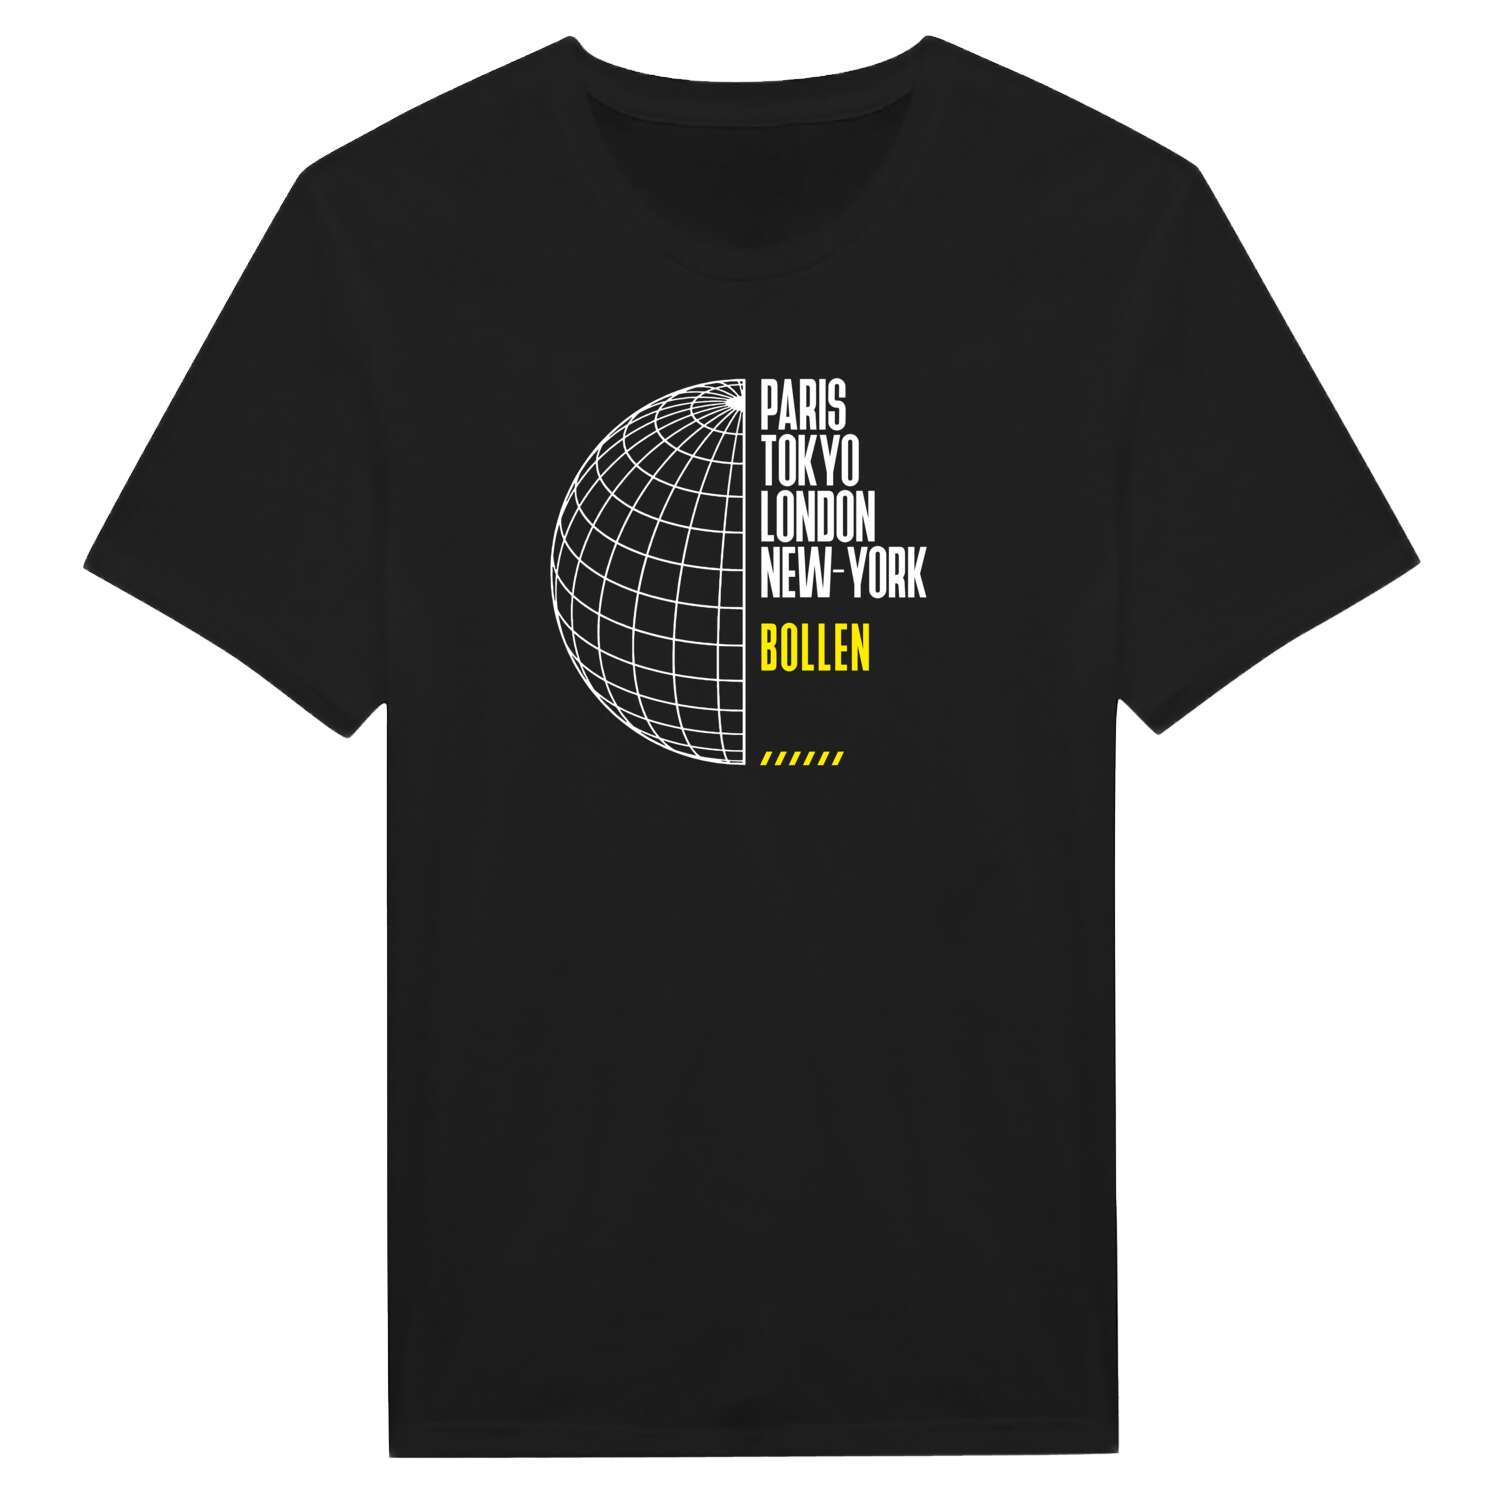 Bollen T-Shirt »Paris Tokyo London«